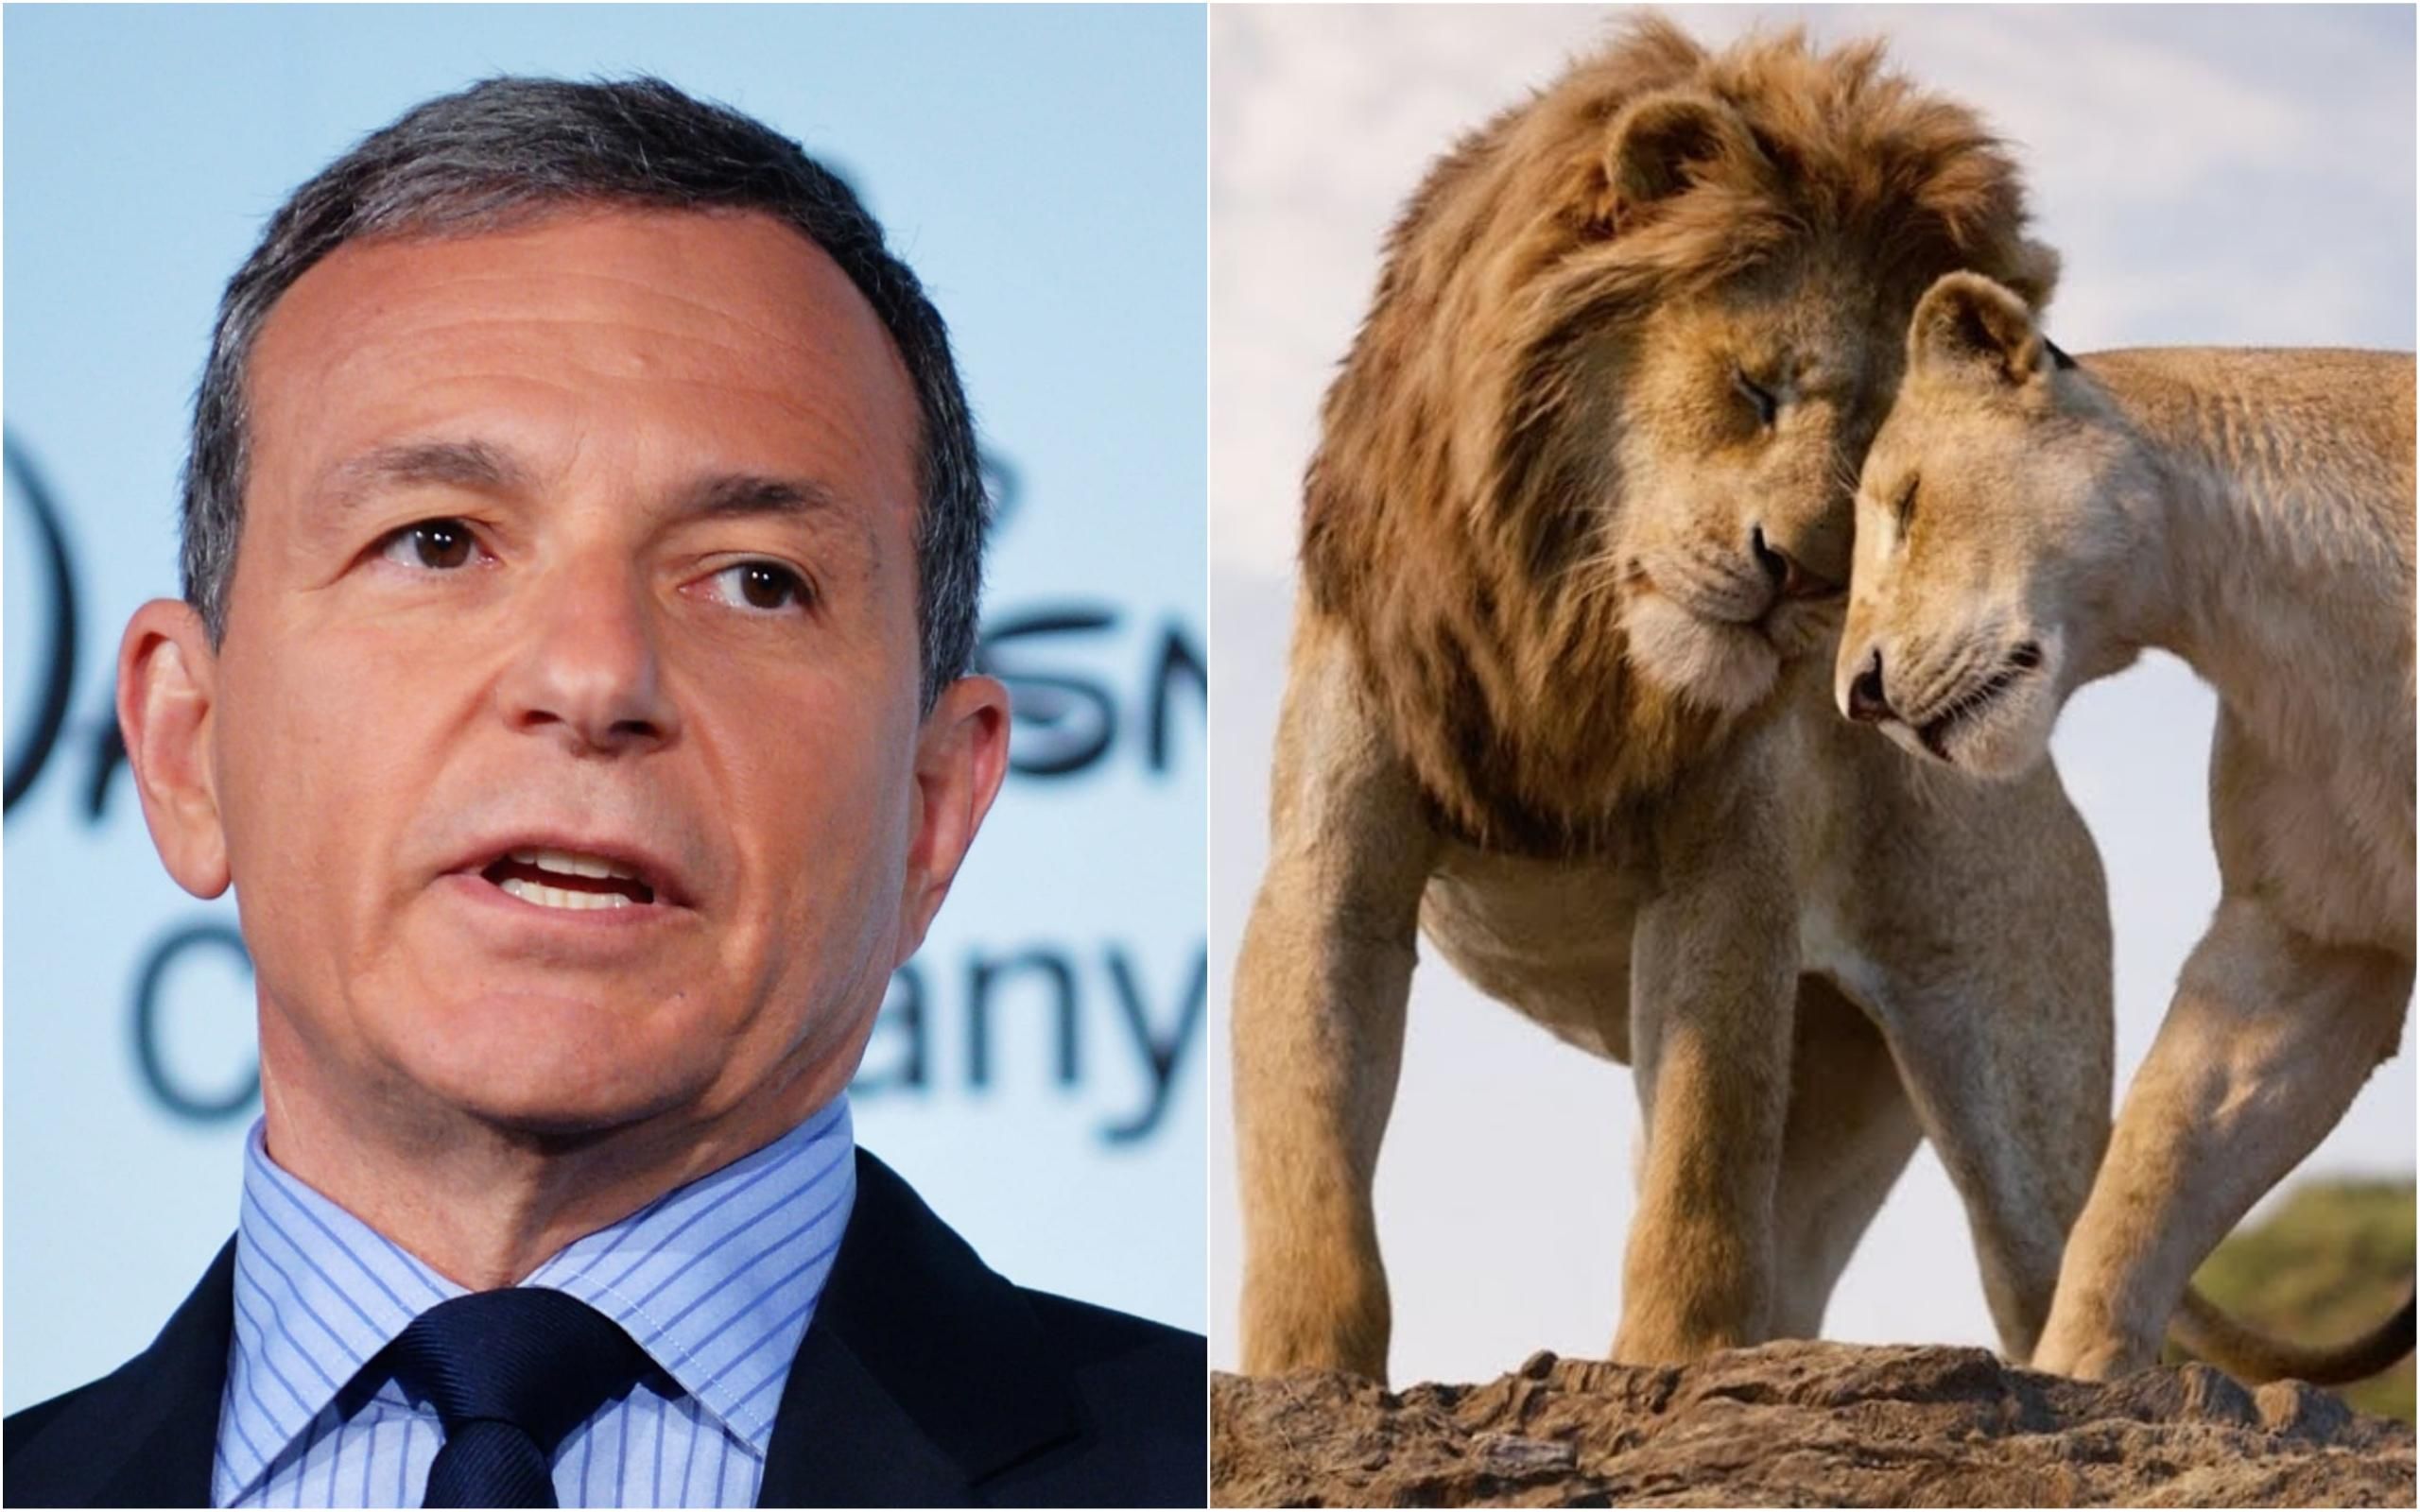 Глава Disney пообещал сделать вклад в фонд школы, заплатившей штраф за показ "Короля Льва"